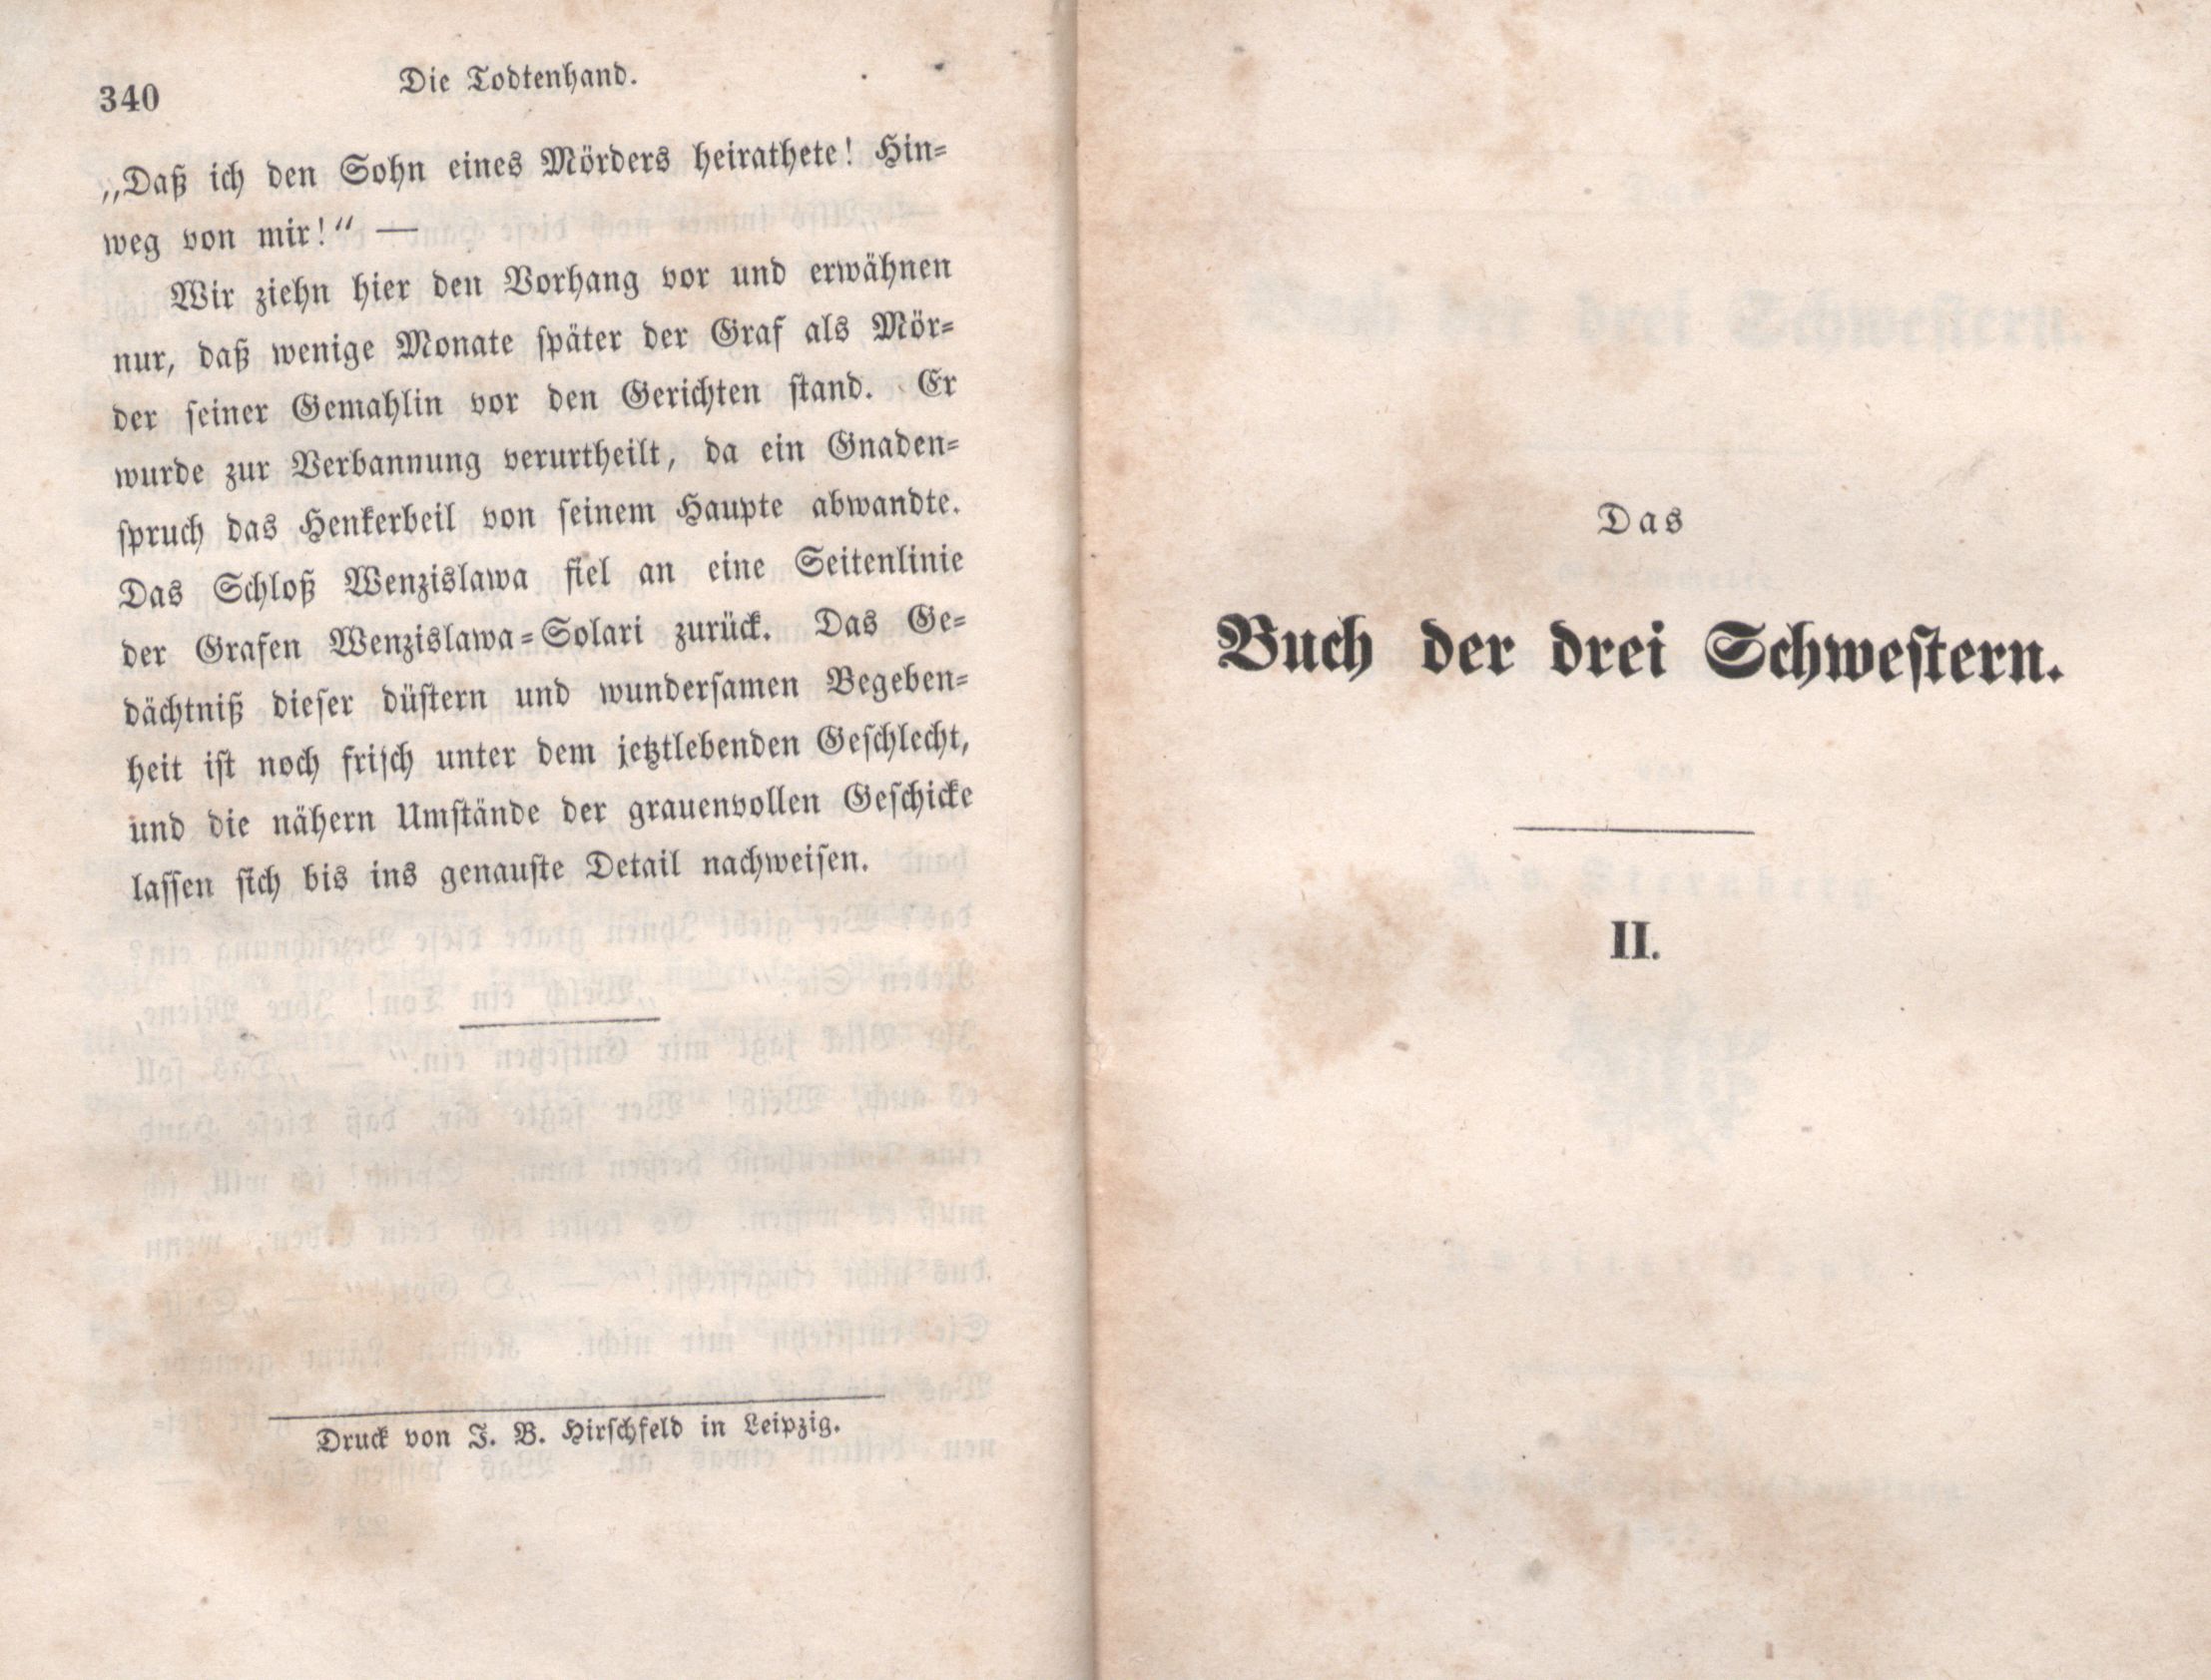 Das Buch der drei Schwestern [1] (1847) | 176. (340) Основной текст